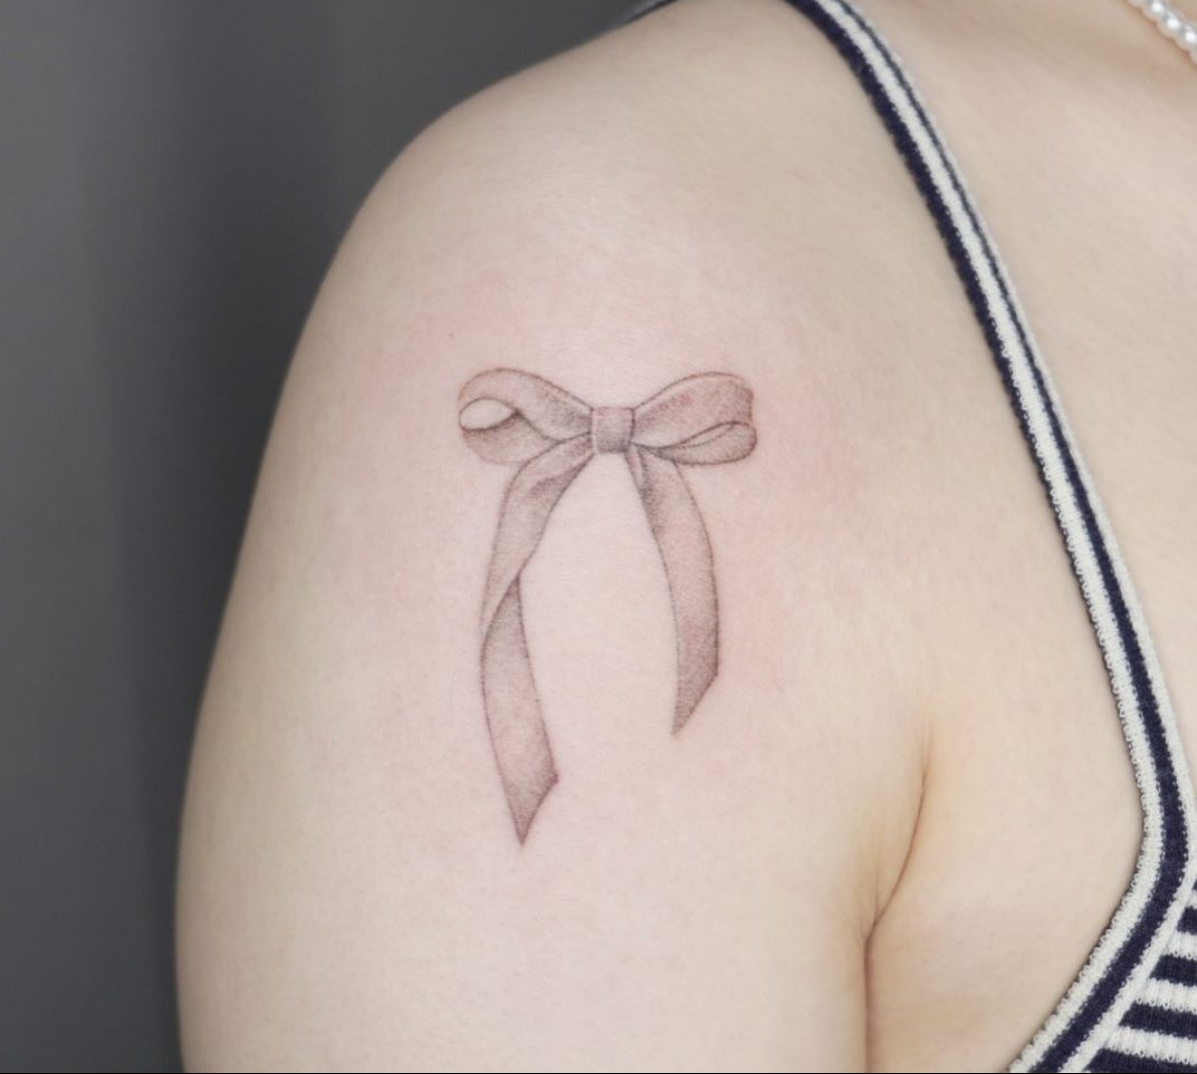 Tatuaż kokardka (lub wstążka) – znaczenie i inspiracje